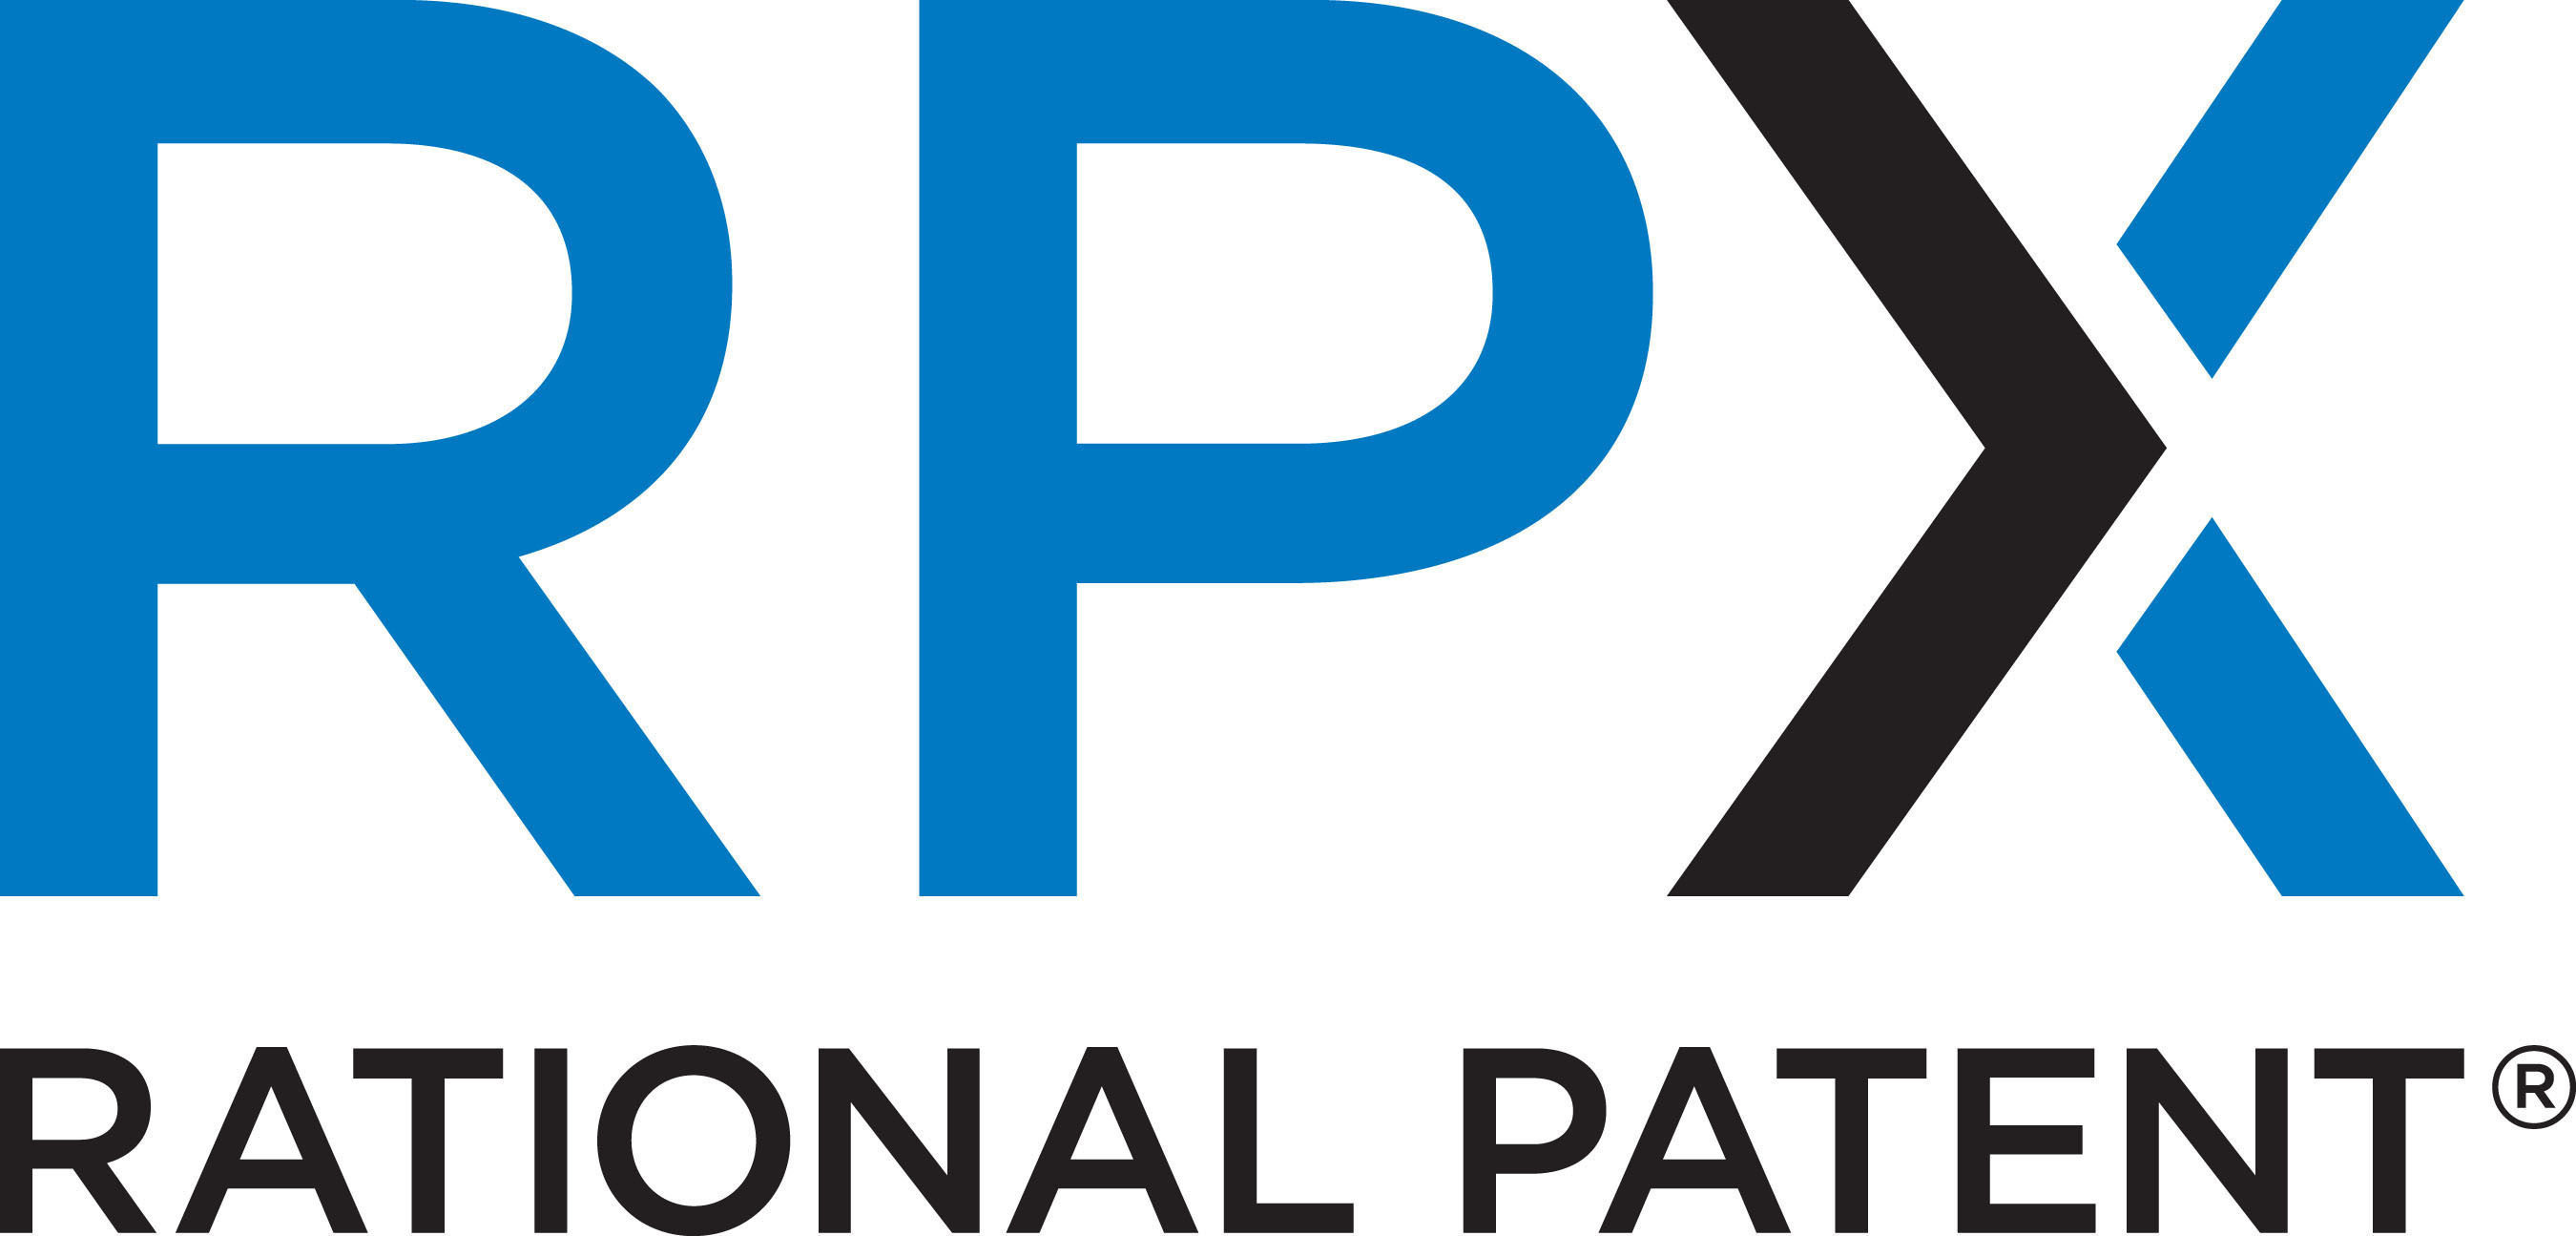 RPX Corporation Logo. (PRNewsFoto/RPX Corporation) (PRNewsFoto/)